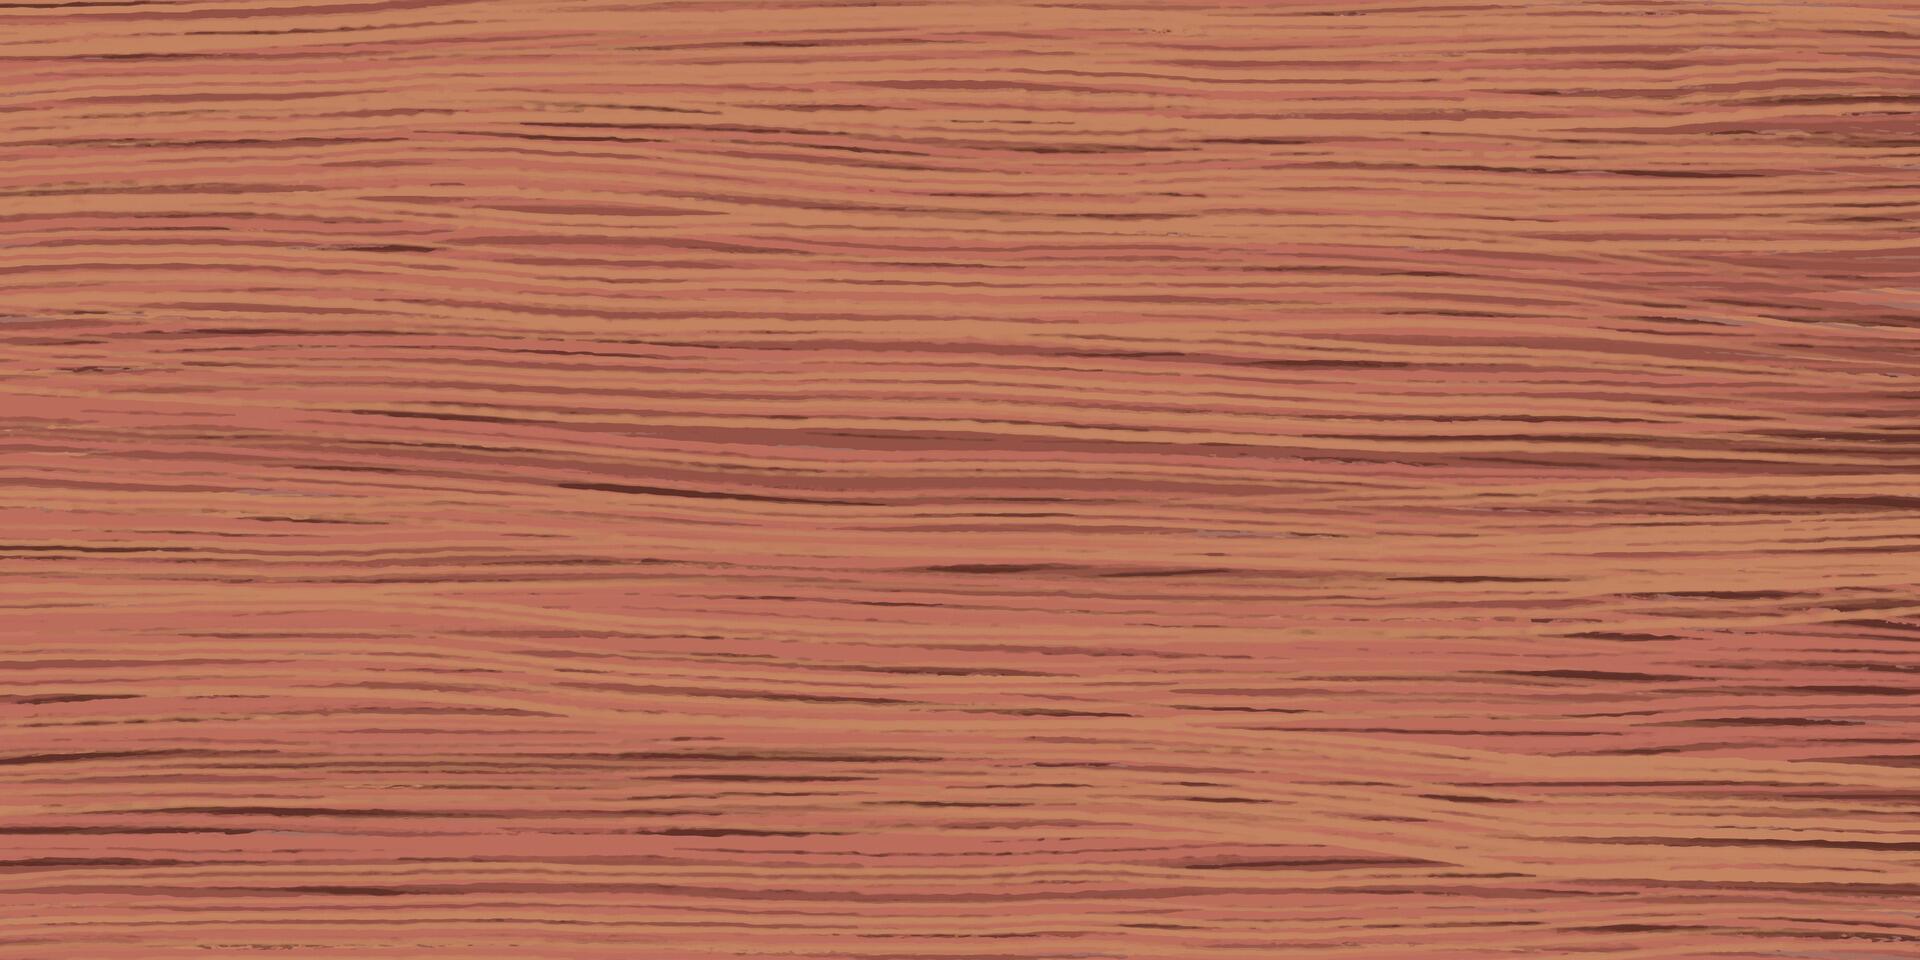 enhetlig röd ek trä spannmål textur med horisontell ådror. vektor trä- bakgrund. foder styrelser vägg. torkades plankor. målad trä. swatch för laminera